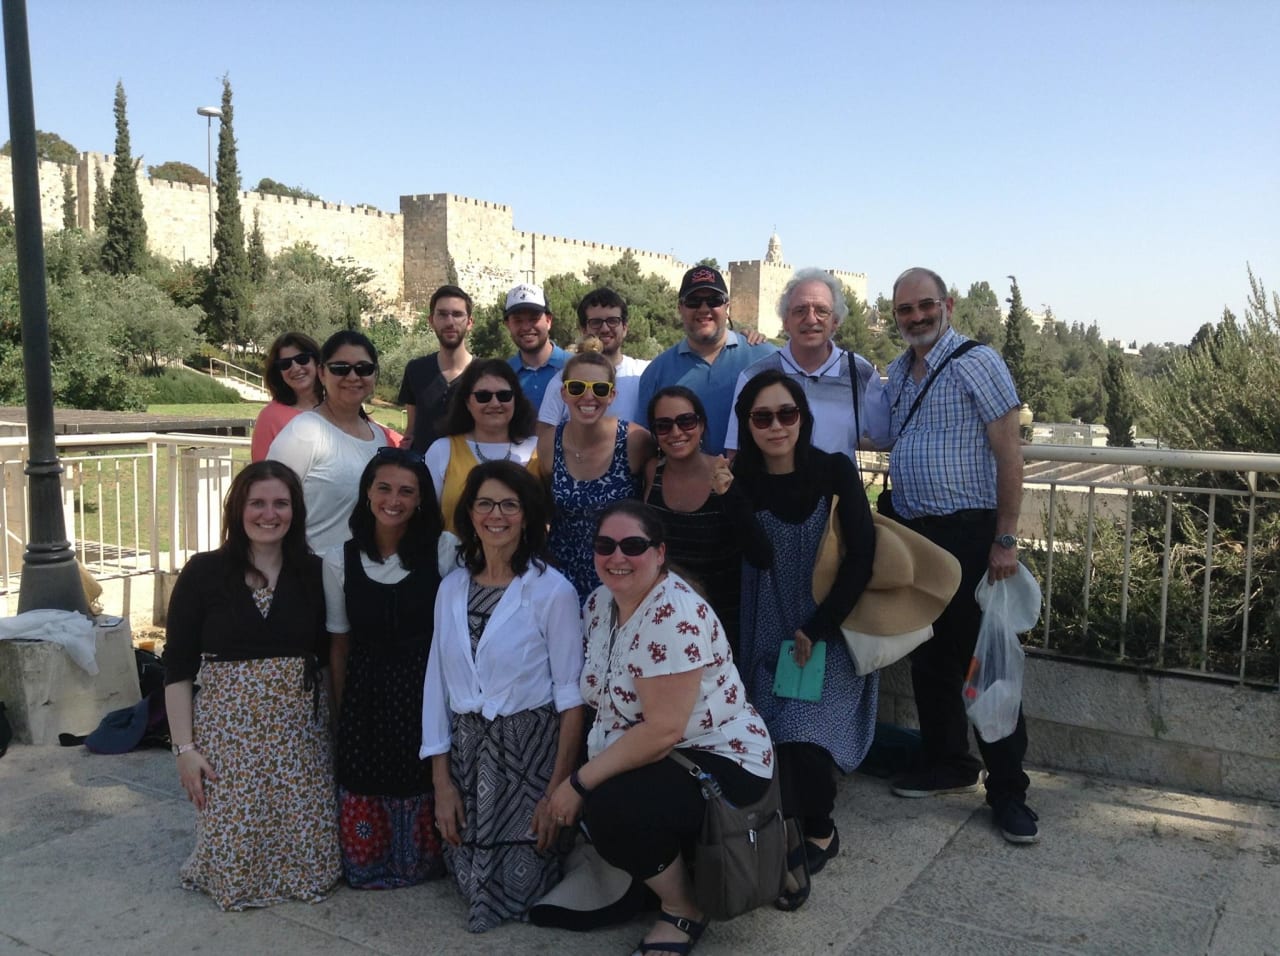 The Hebrew University of Jerusalem Master in Educazione - Programma misto specializzato in educazione ebraica